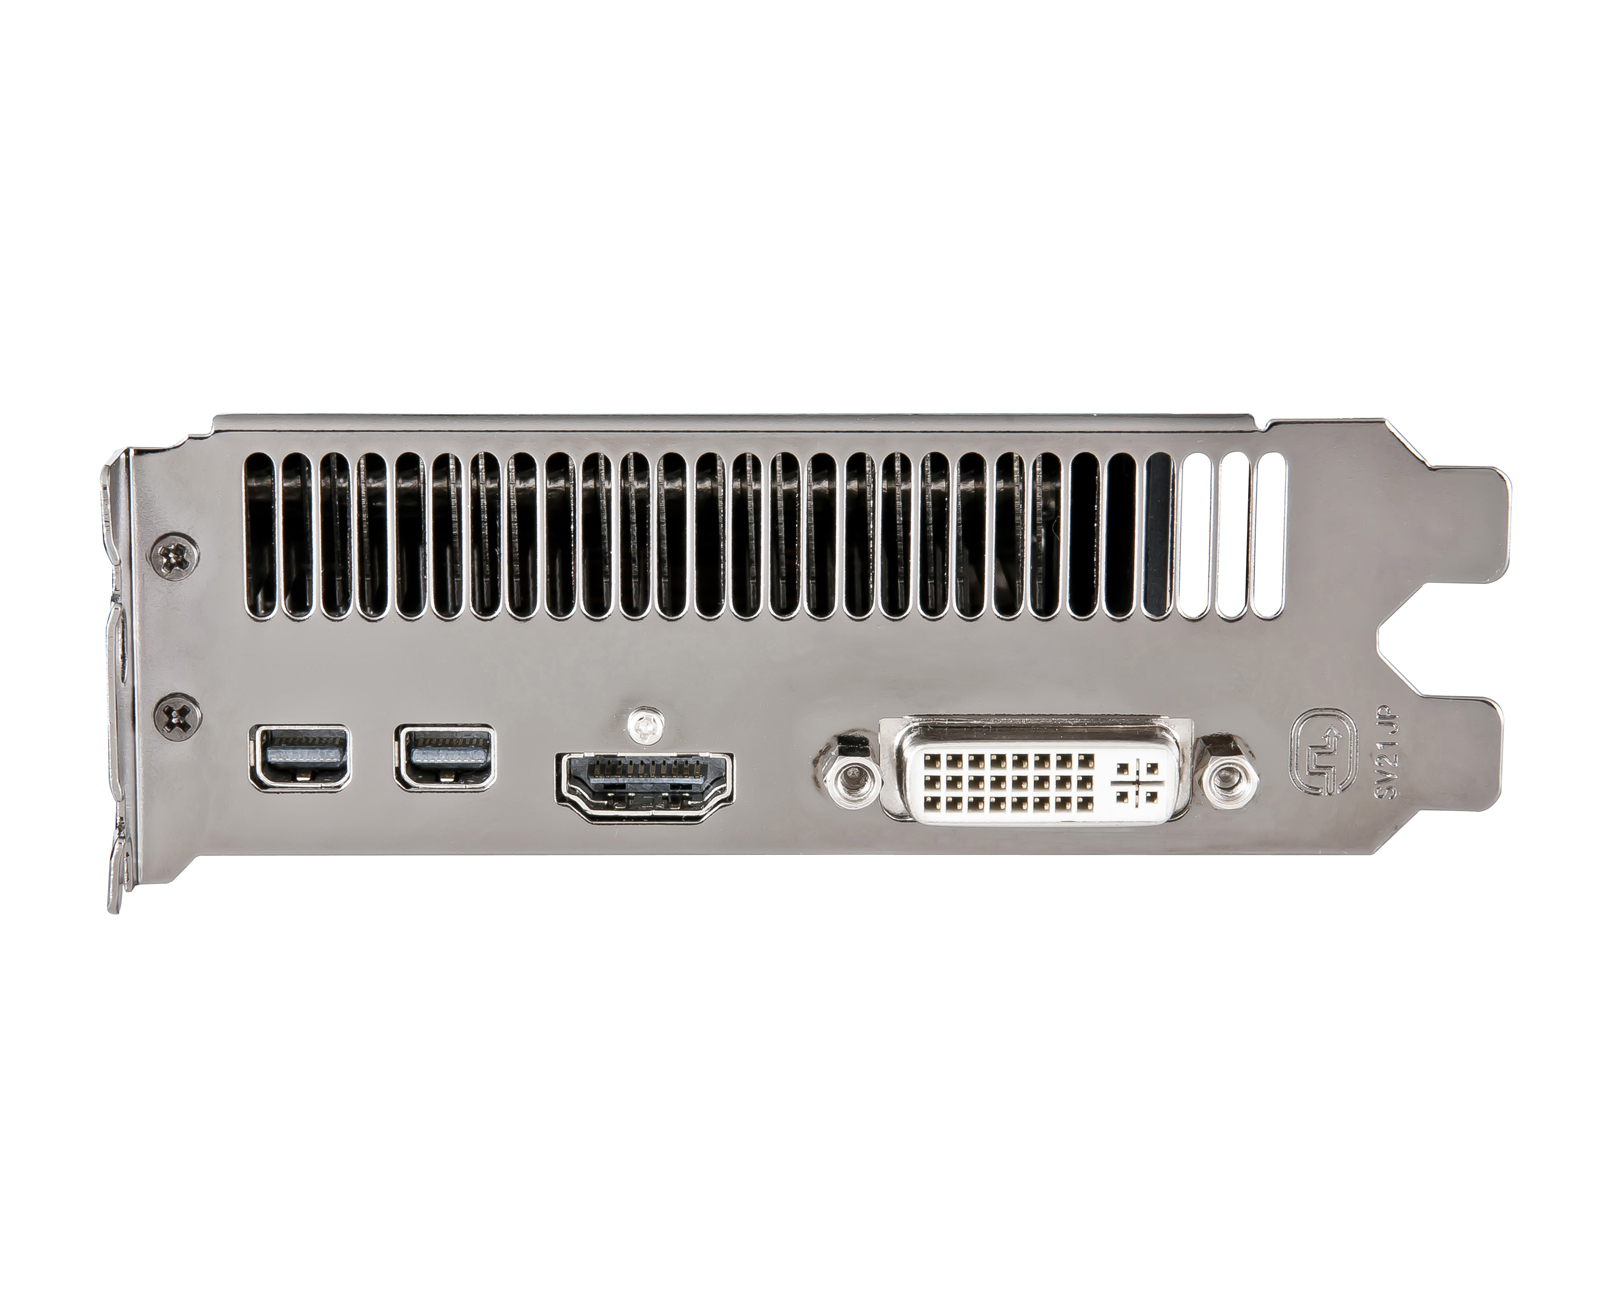 HIS 7950 IceQ Turbo 3GB GDDR5 PCI-E DVI/HDMI/2xMini DP < HD 7900 